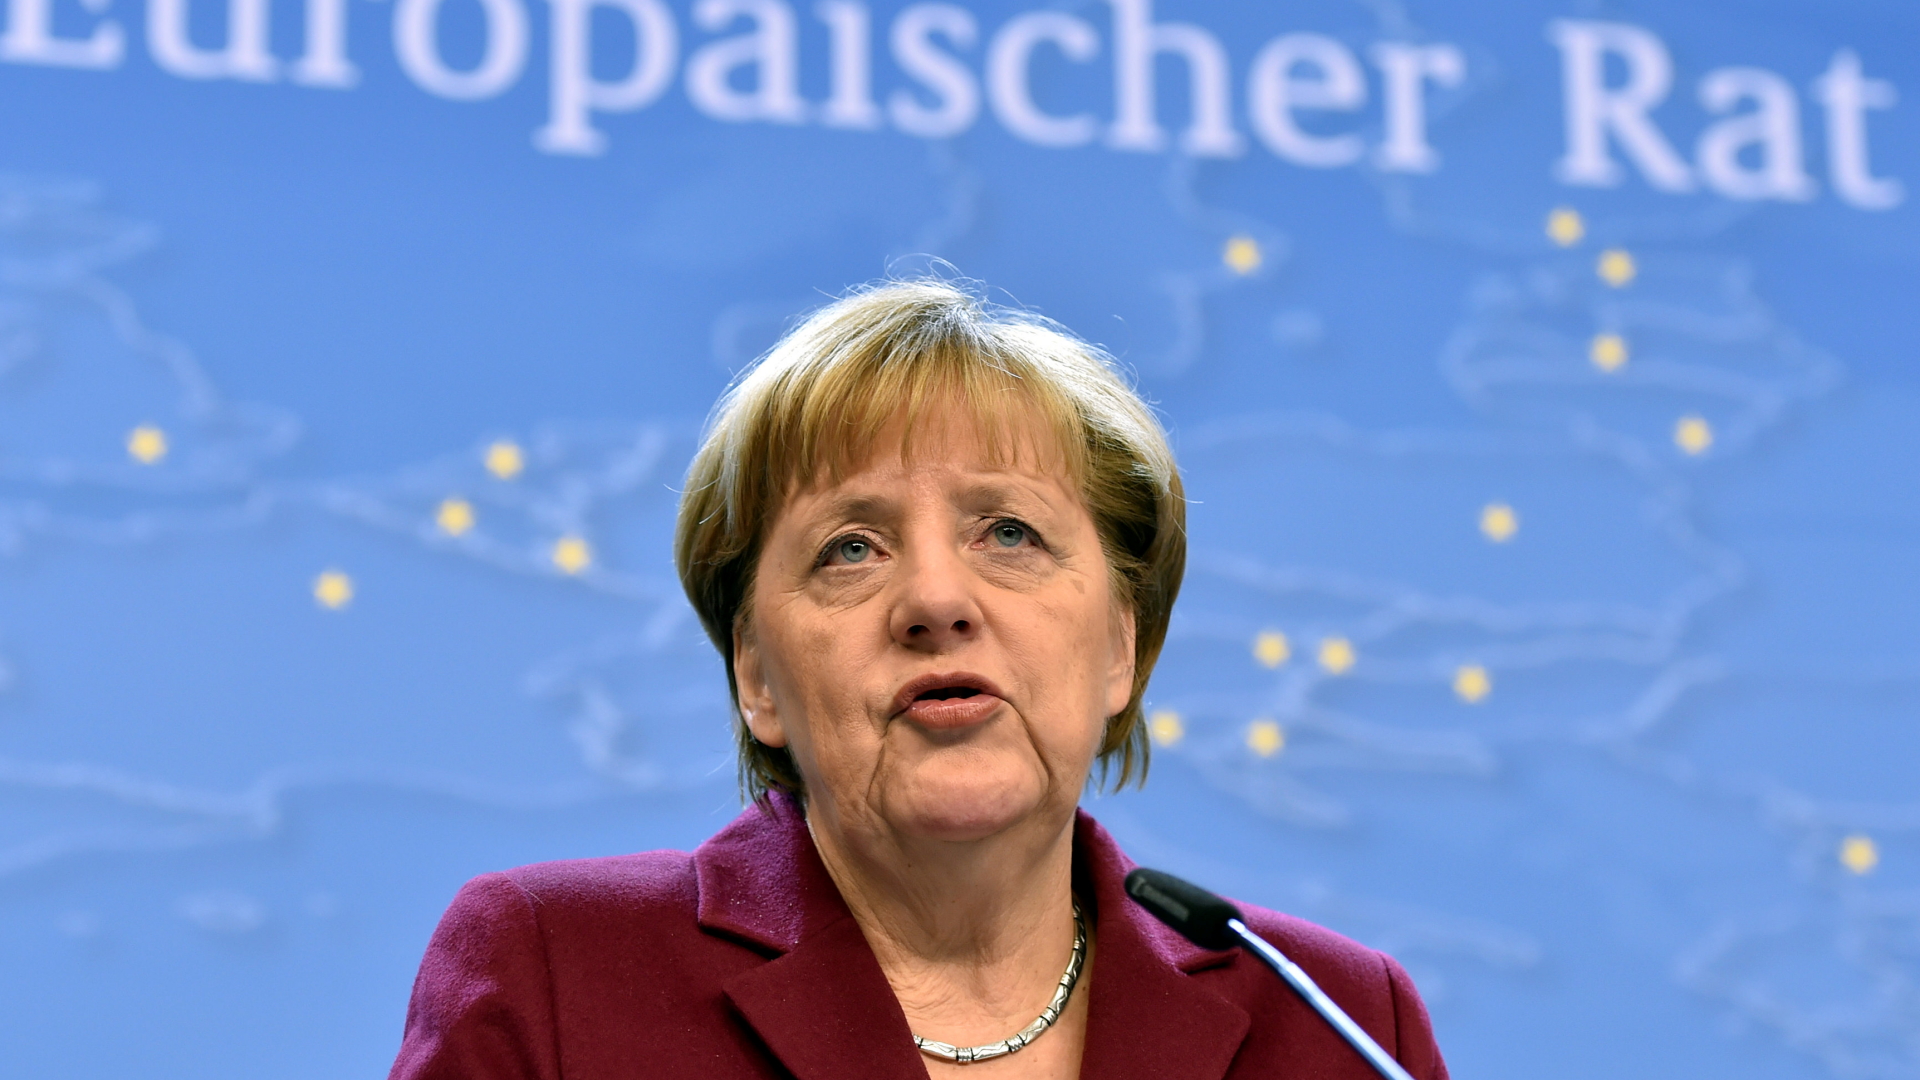 Kanzlerin Angela Merkel | Bildquelle: REUTERS